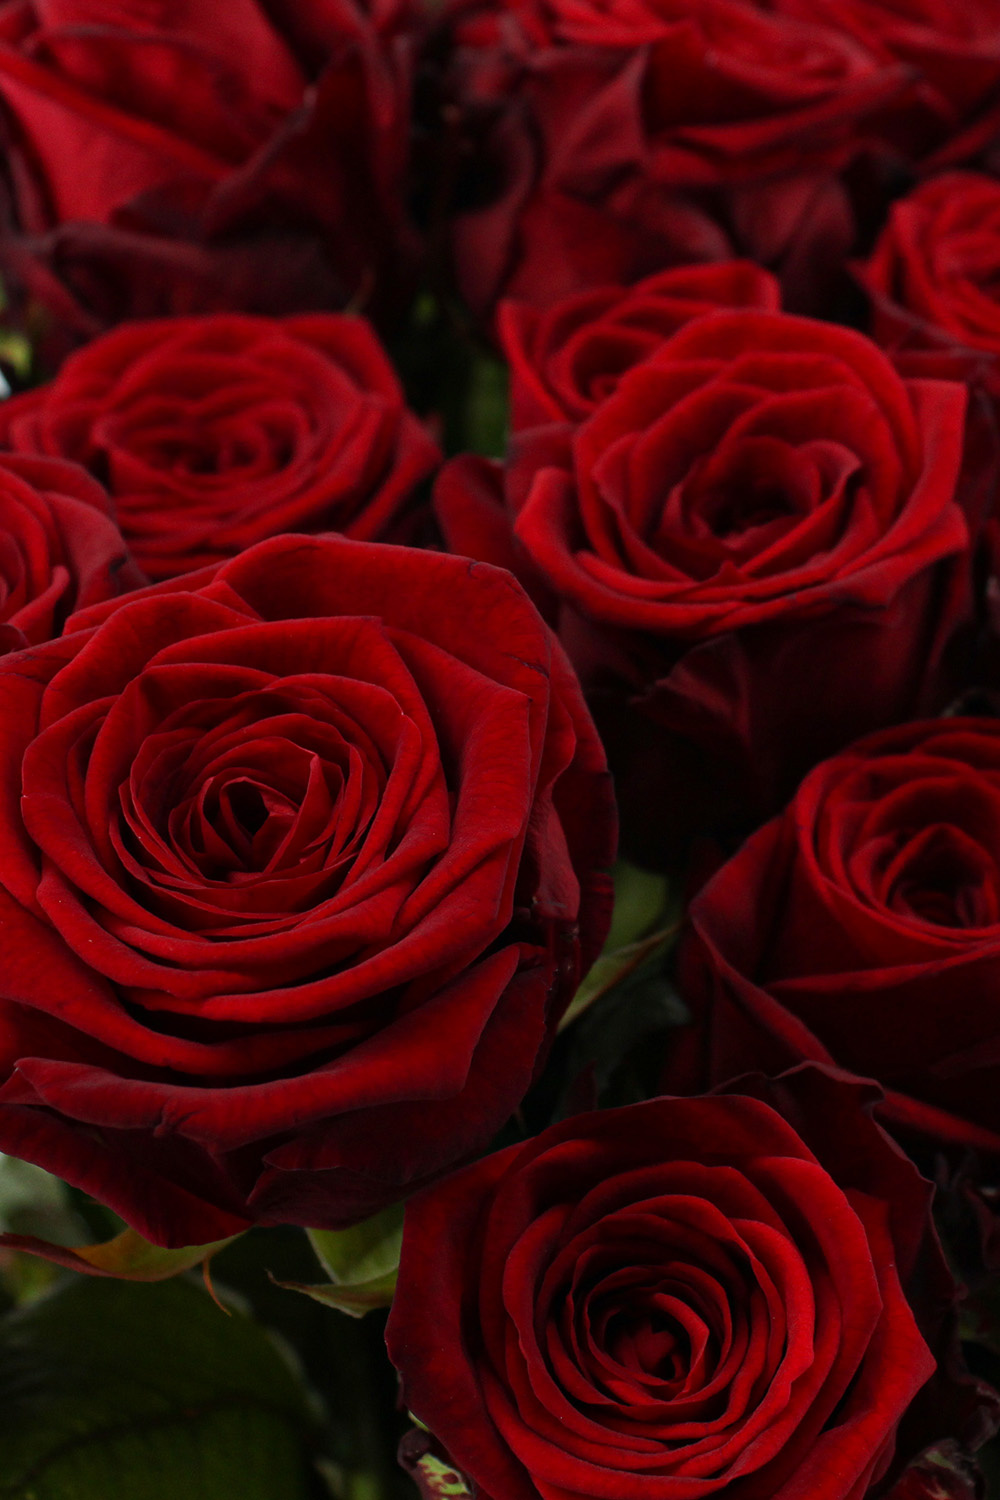 Mars Oordeel Voorbijganger Red Naomi! Rode rozen 100 stuks kopen? | 10 daagse garantie - ROZEN.NL